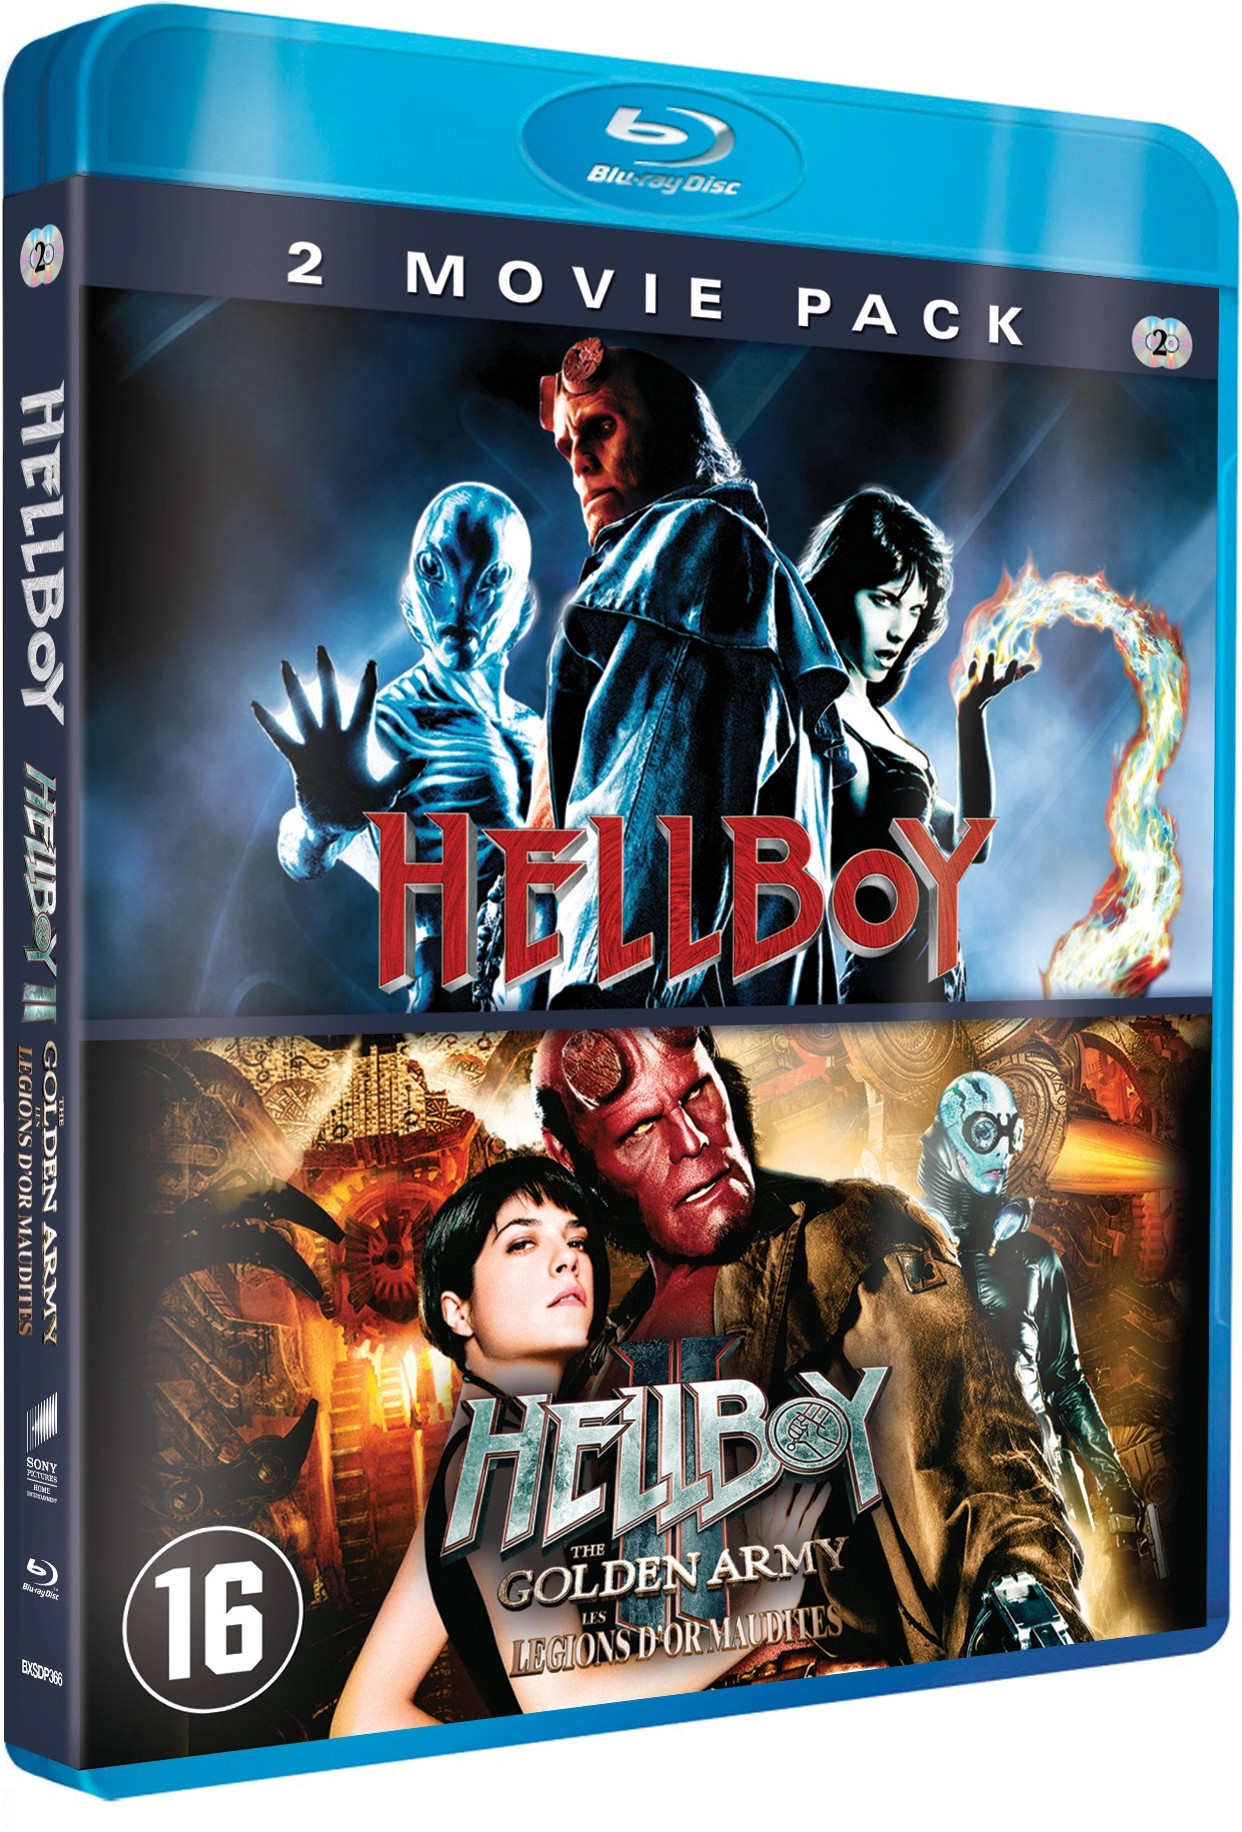 Hellboy + Hellboy 2: The Golden Army